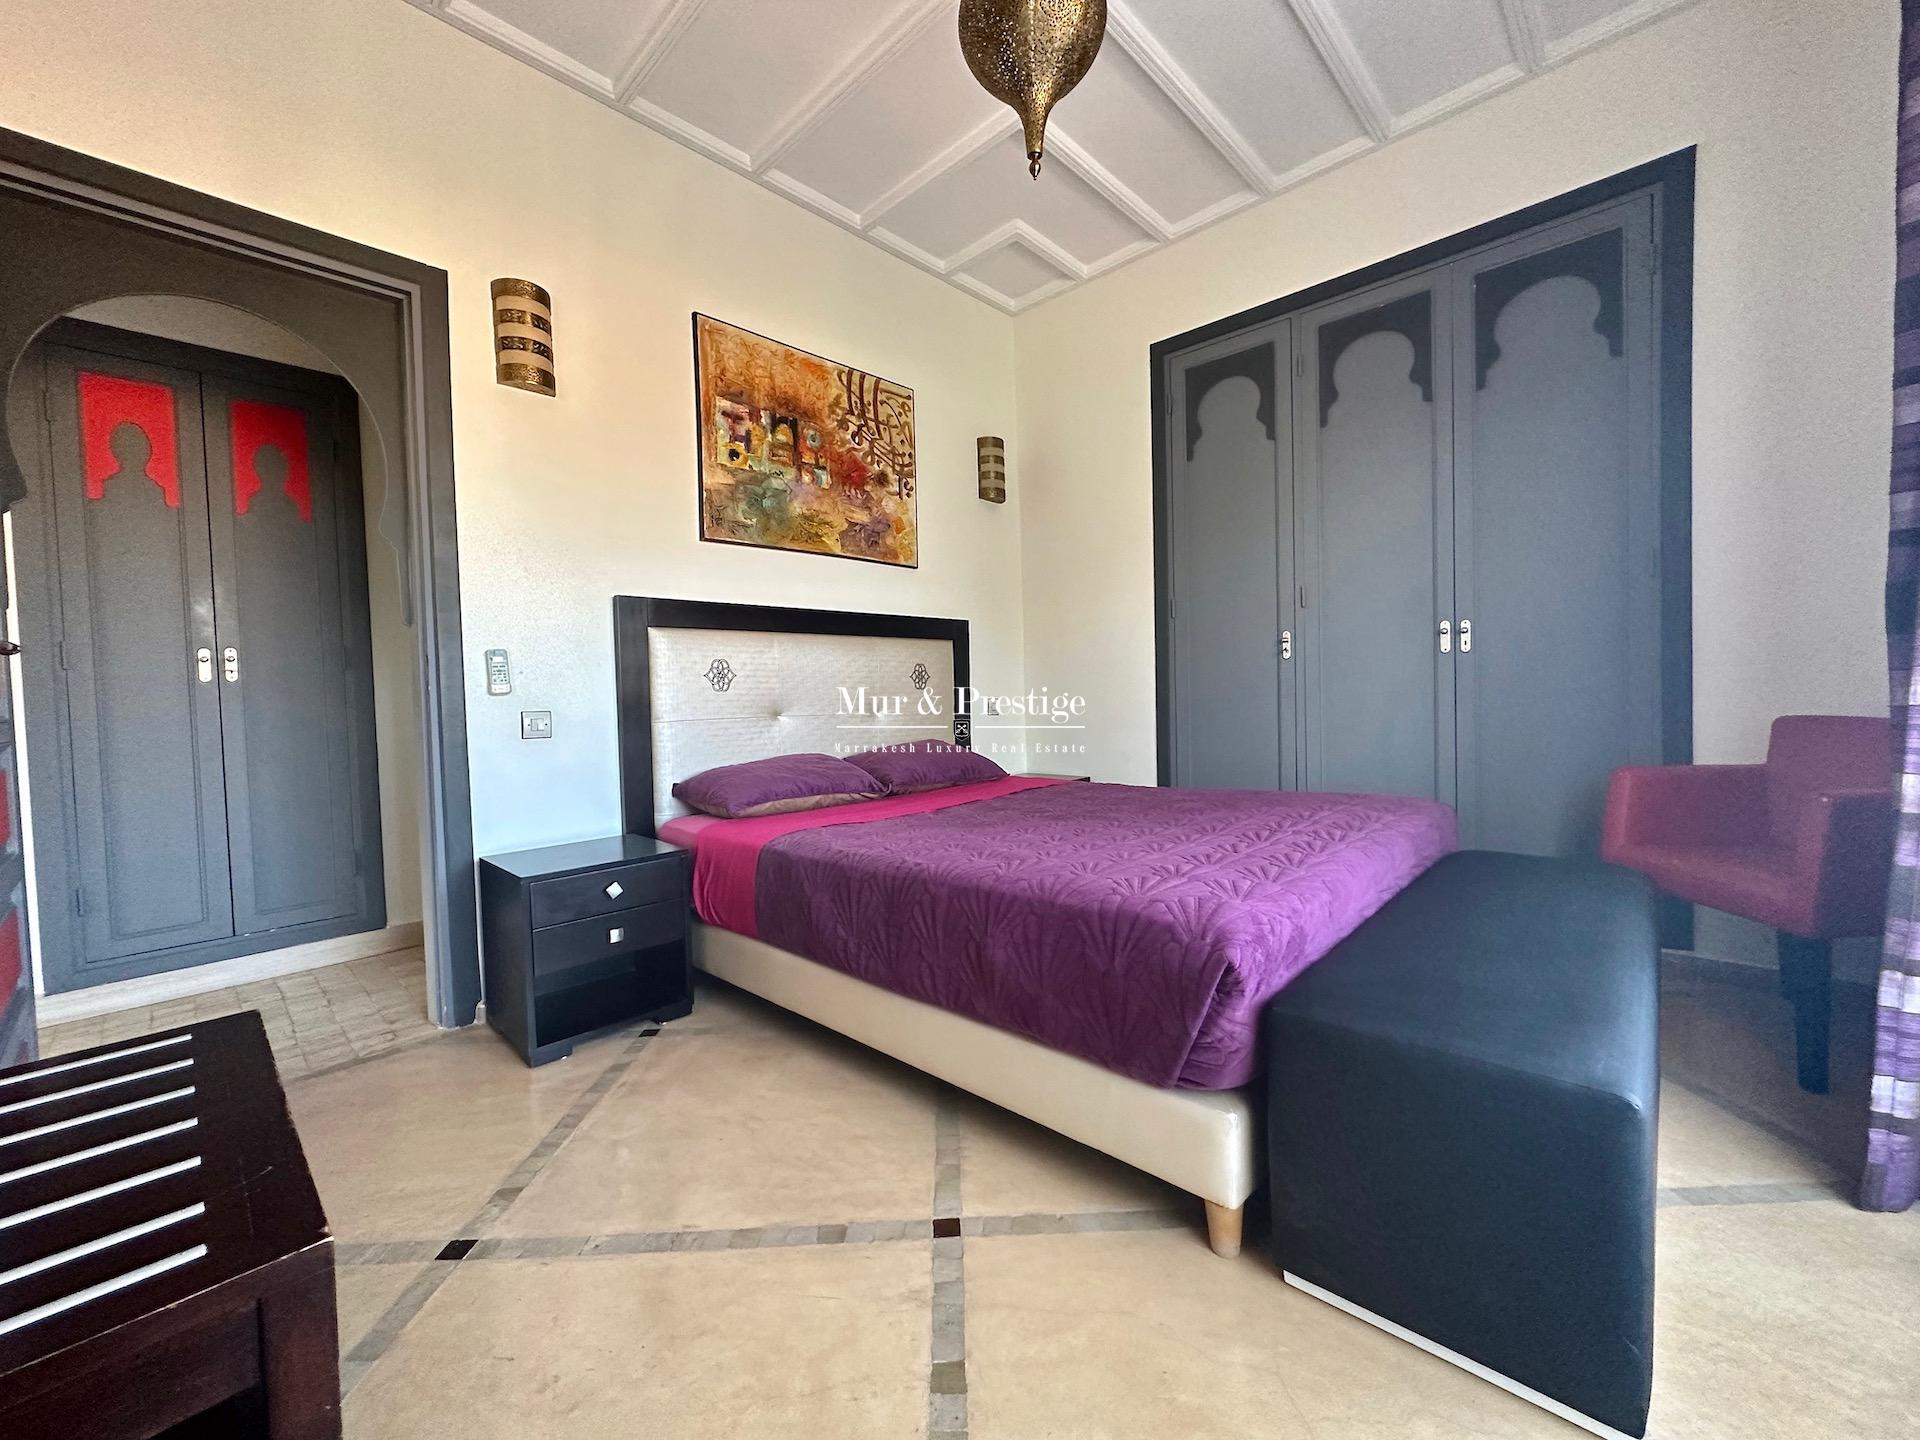 Location Appartement 3 chambres à Marrakech